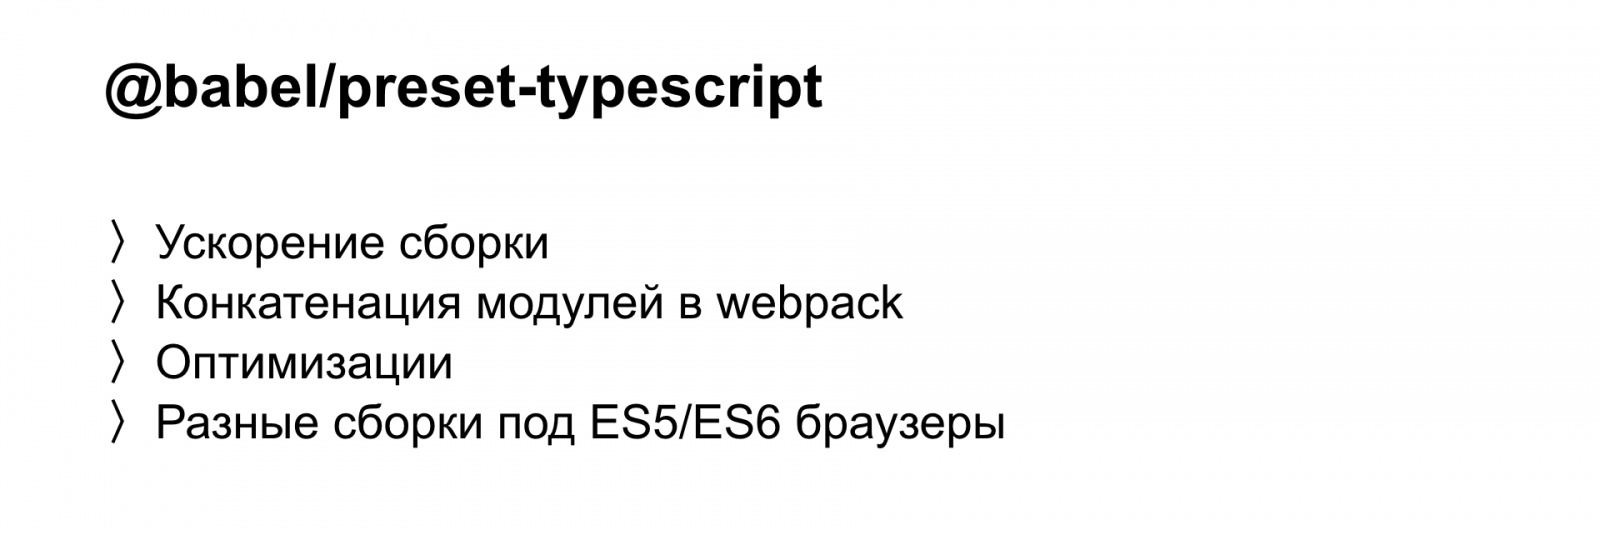 Минифицируем приватные поля в TypeScript. Доклад Яндекса - 25